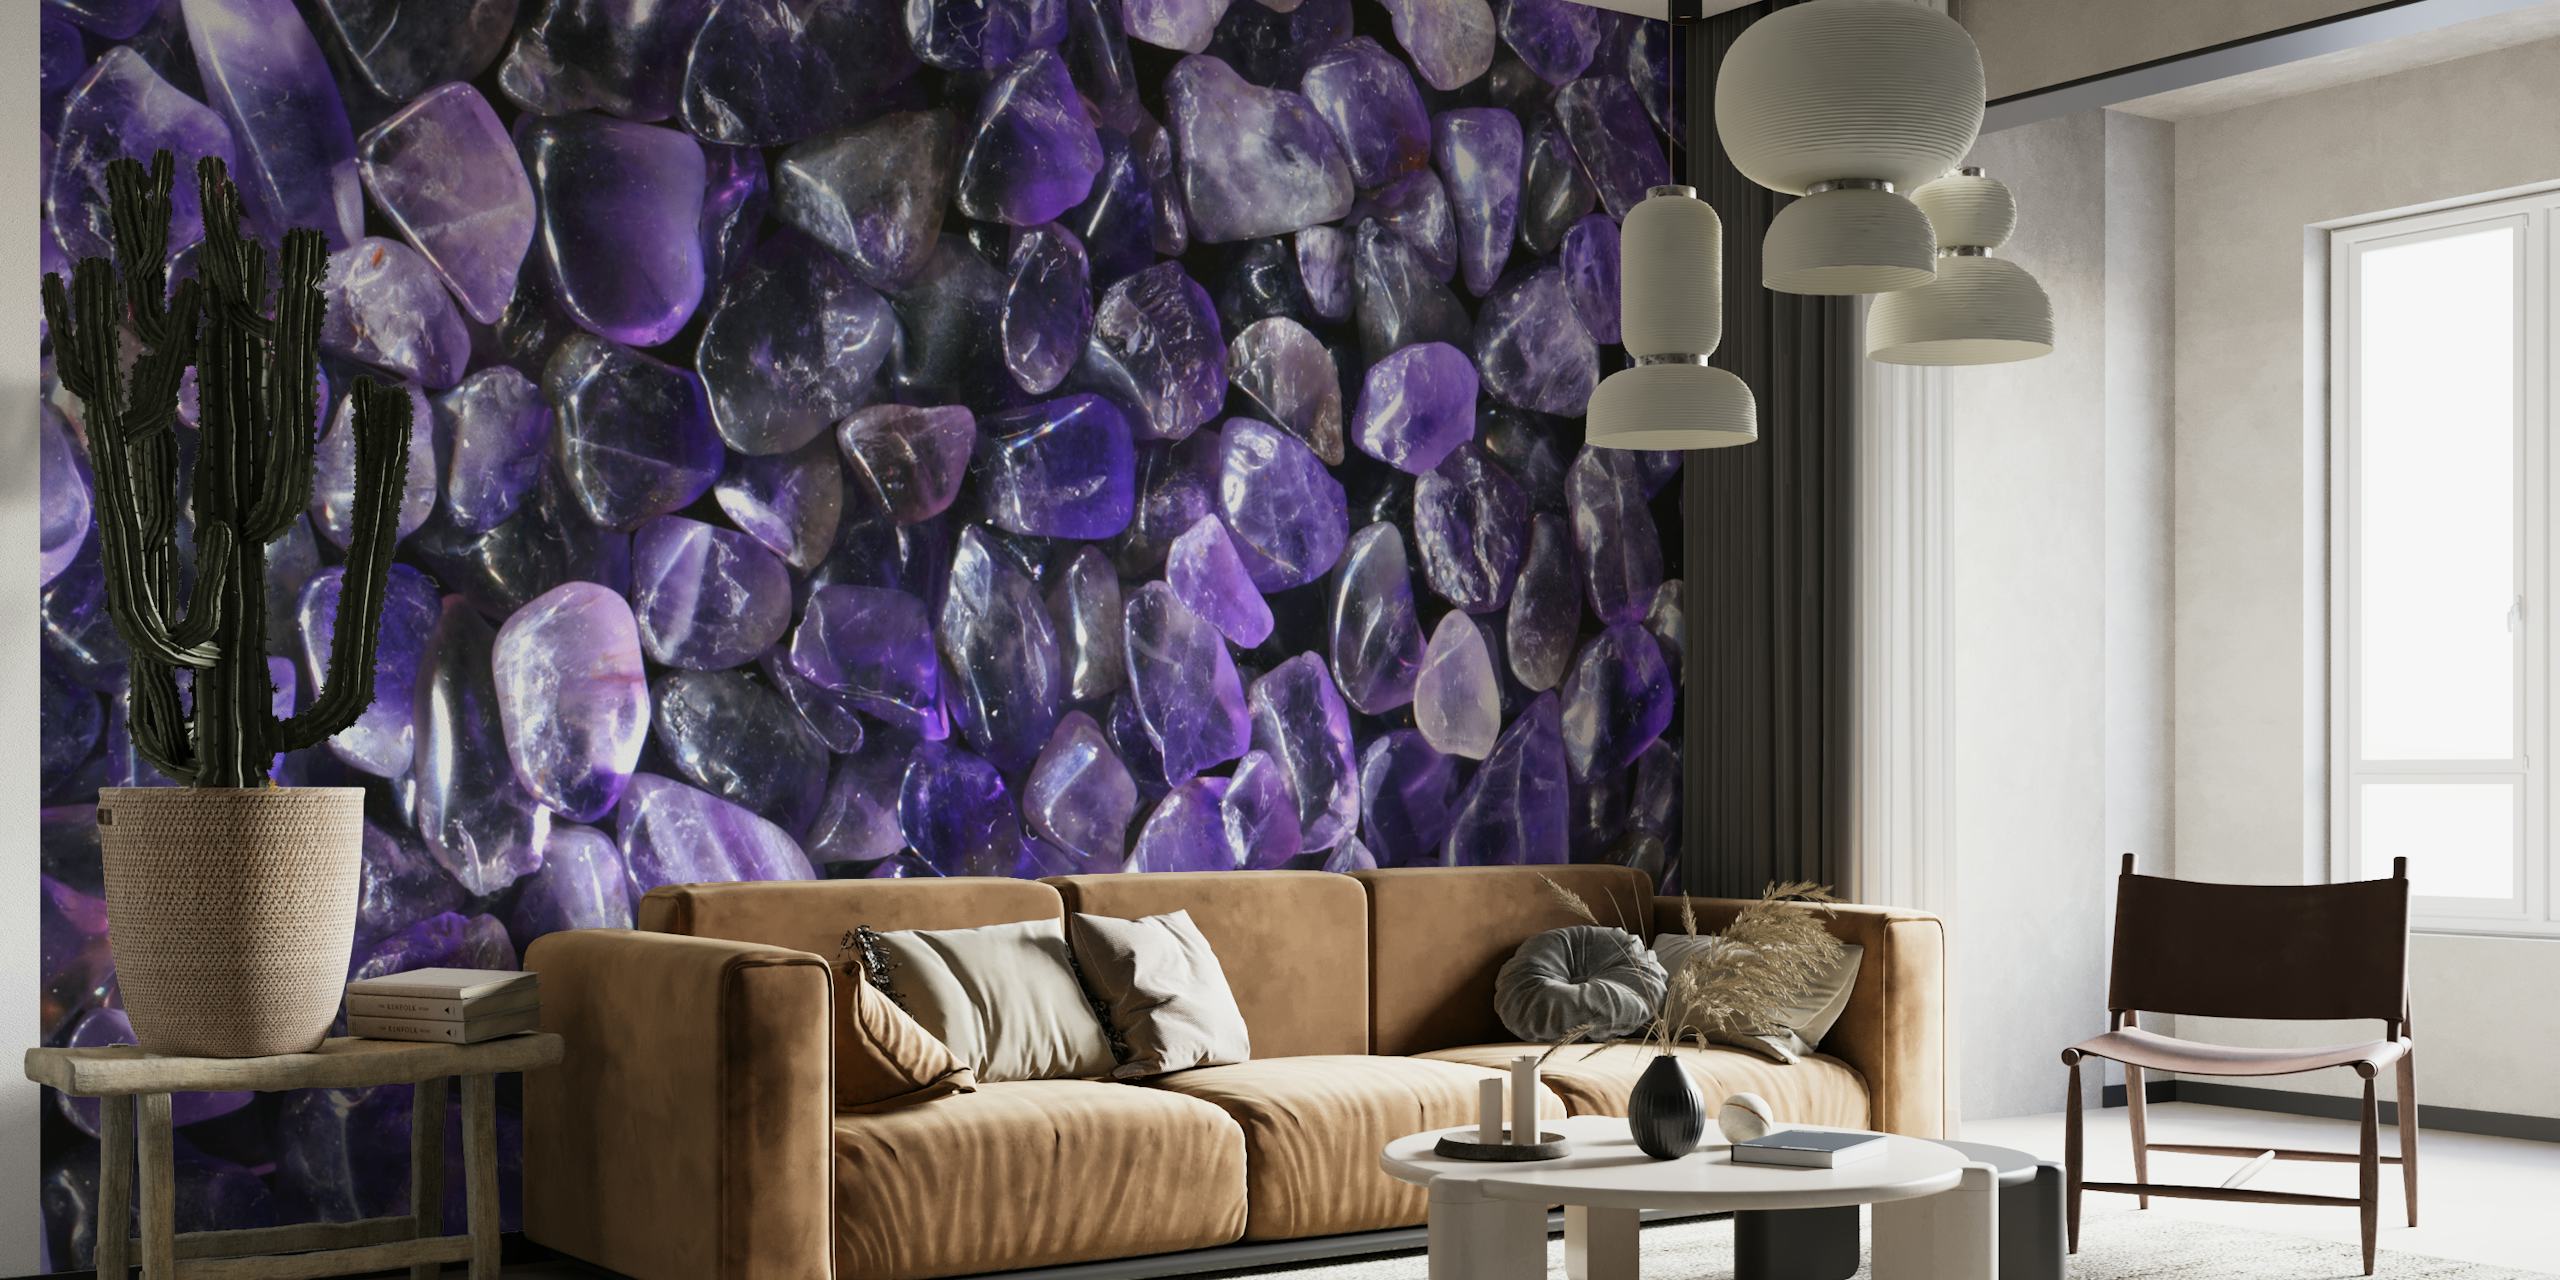 Lila edelsteen fotobehang met een weelderige spreiding van paarse kristallijne stenen